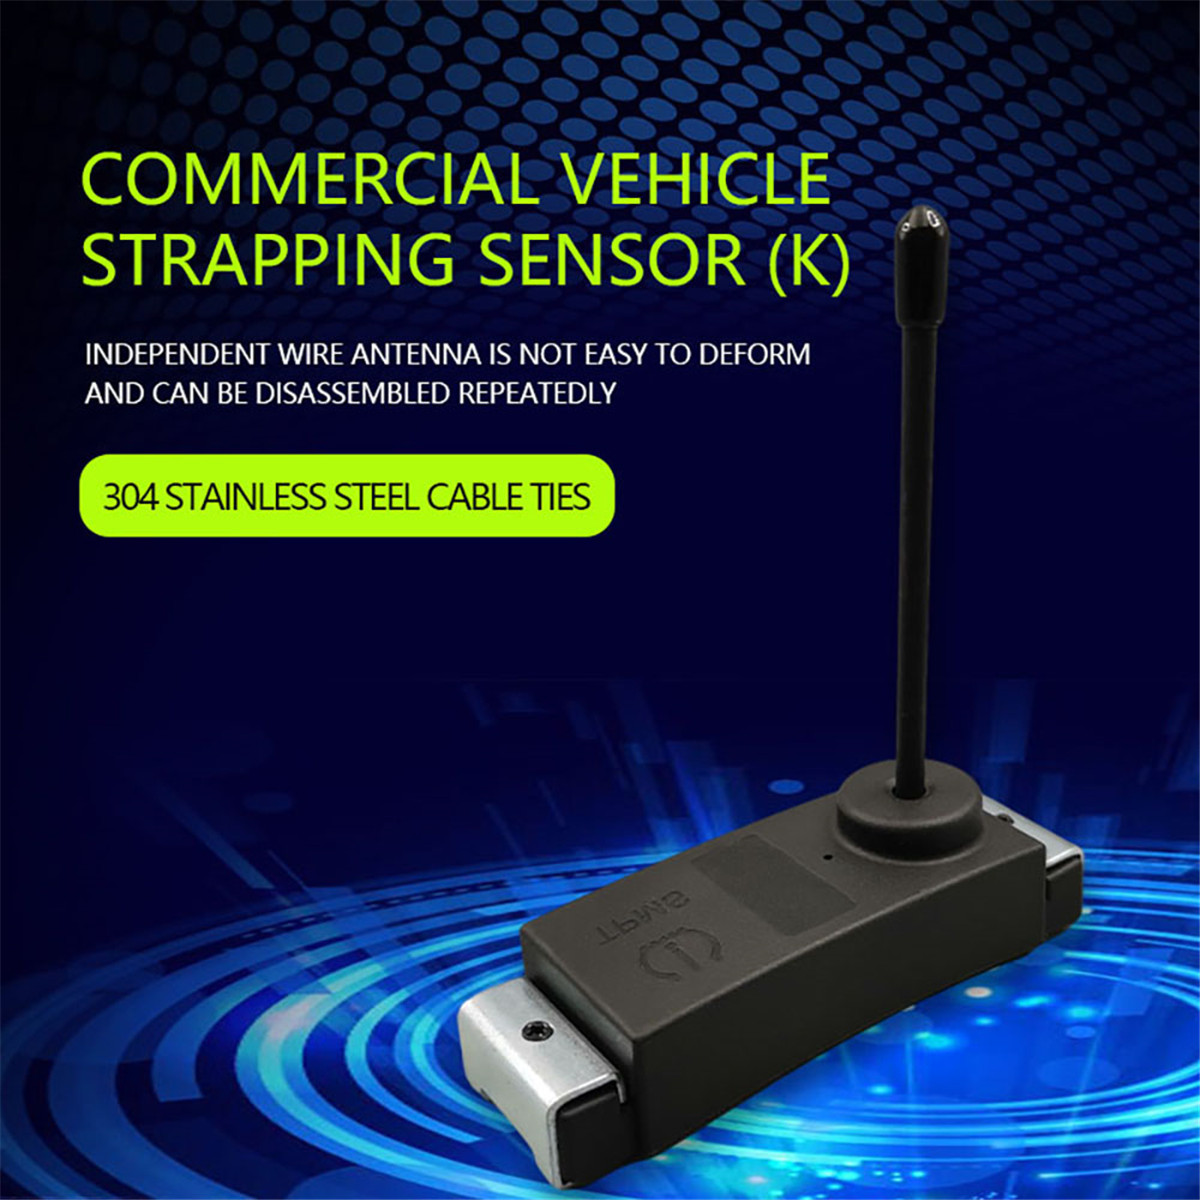 Ticari araç bağlama sensörü01 (9)